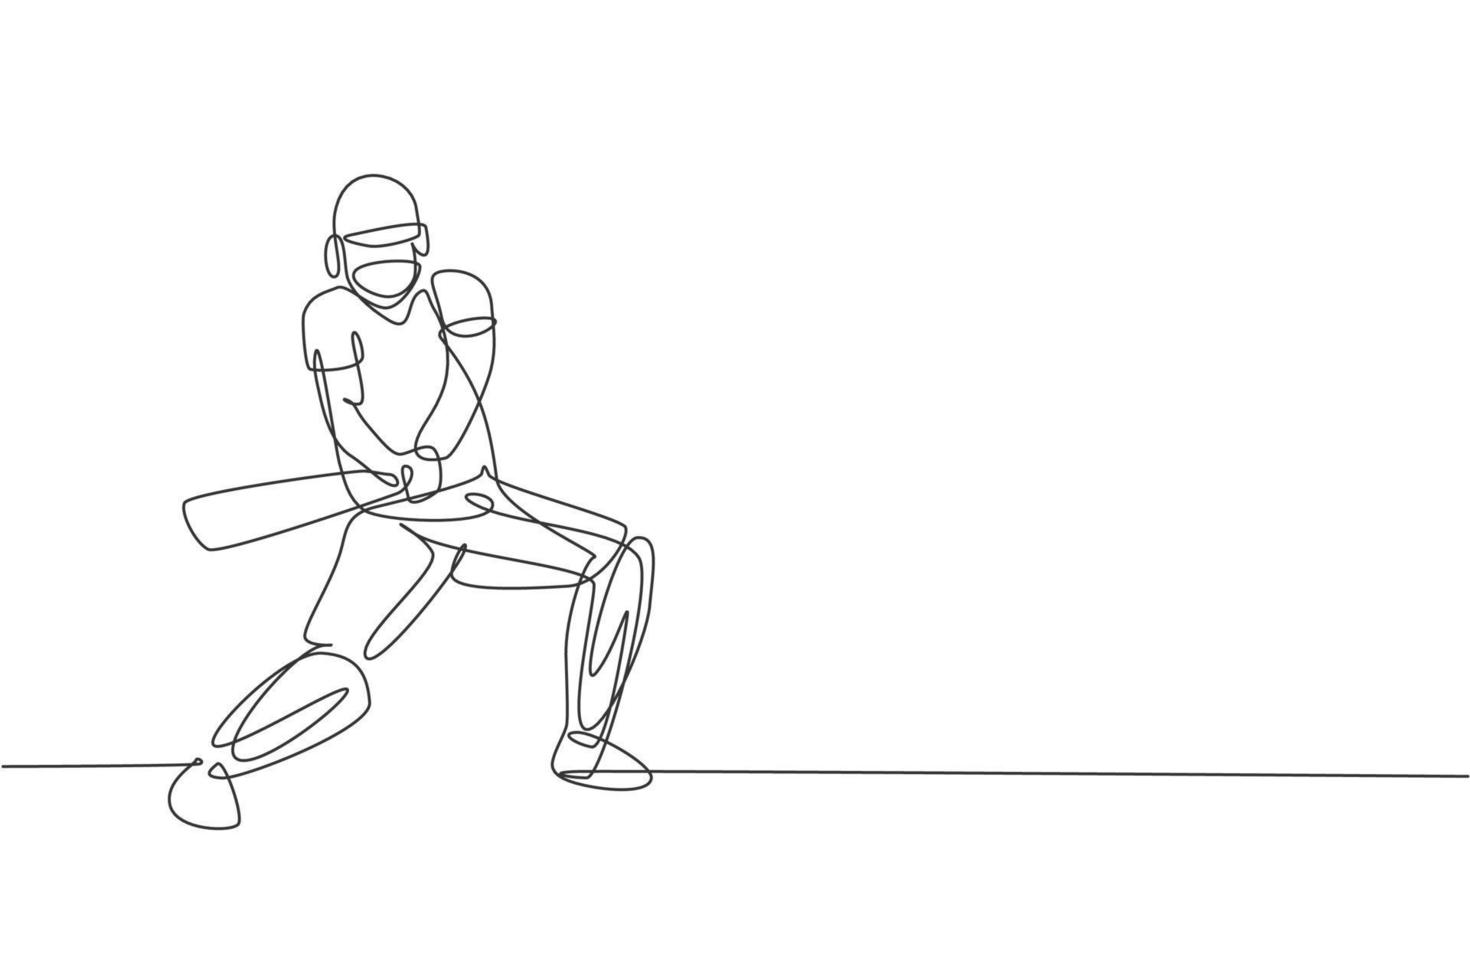 enkele doorlopende lijntekening van een jonge behendige cricketspeler die klaar staat om de bal te raken vectorillustratie. sport oefening concept. trendy ontwerp met één regel voor cricketpromotiemedia vector